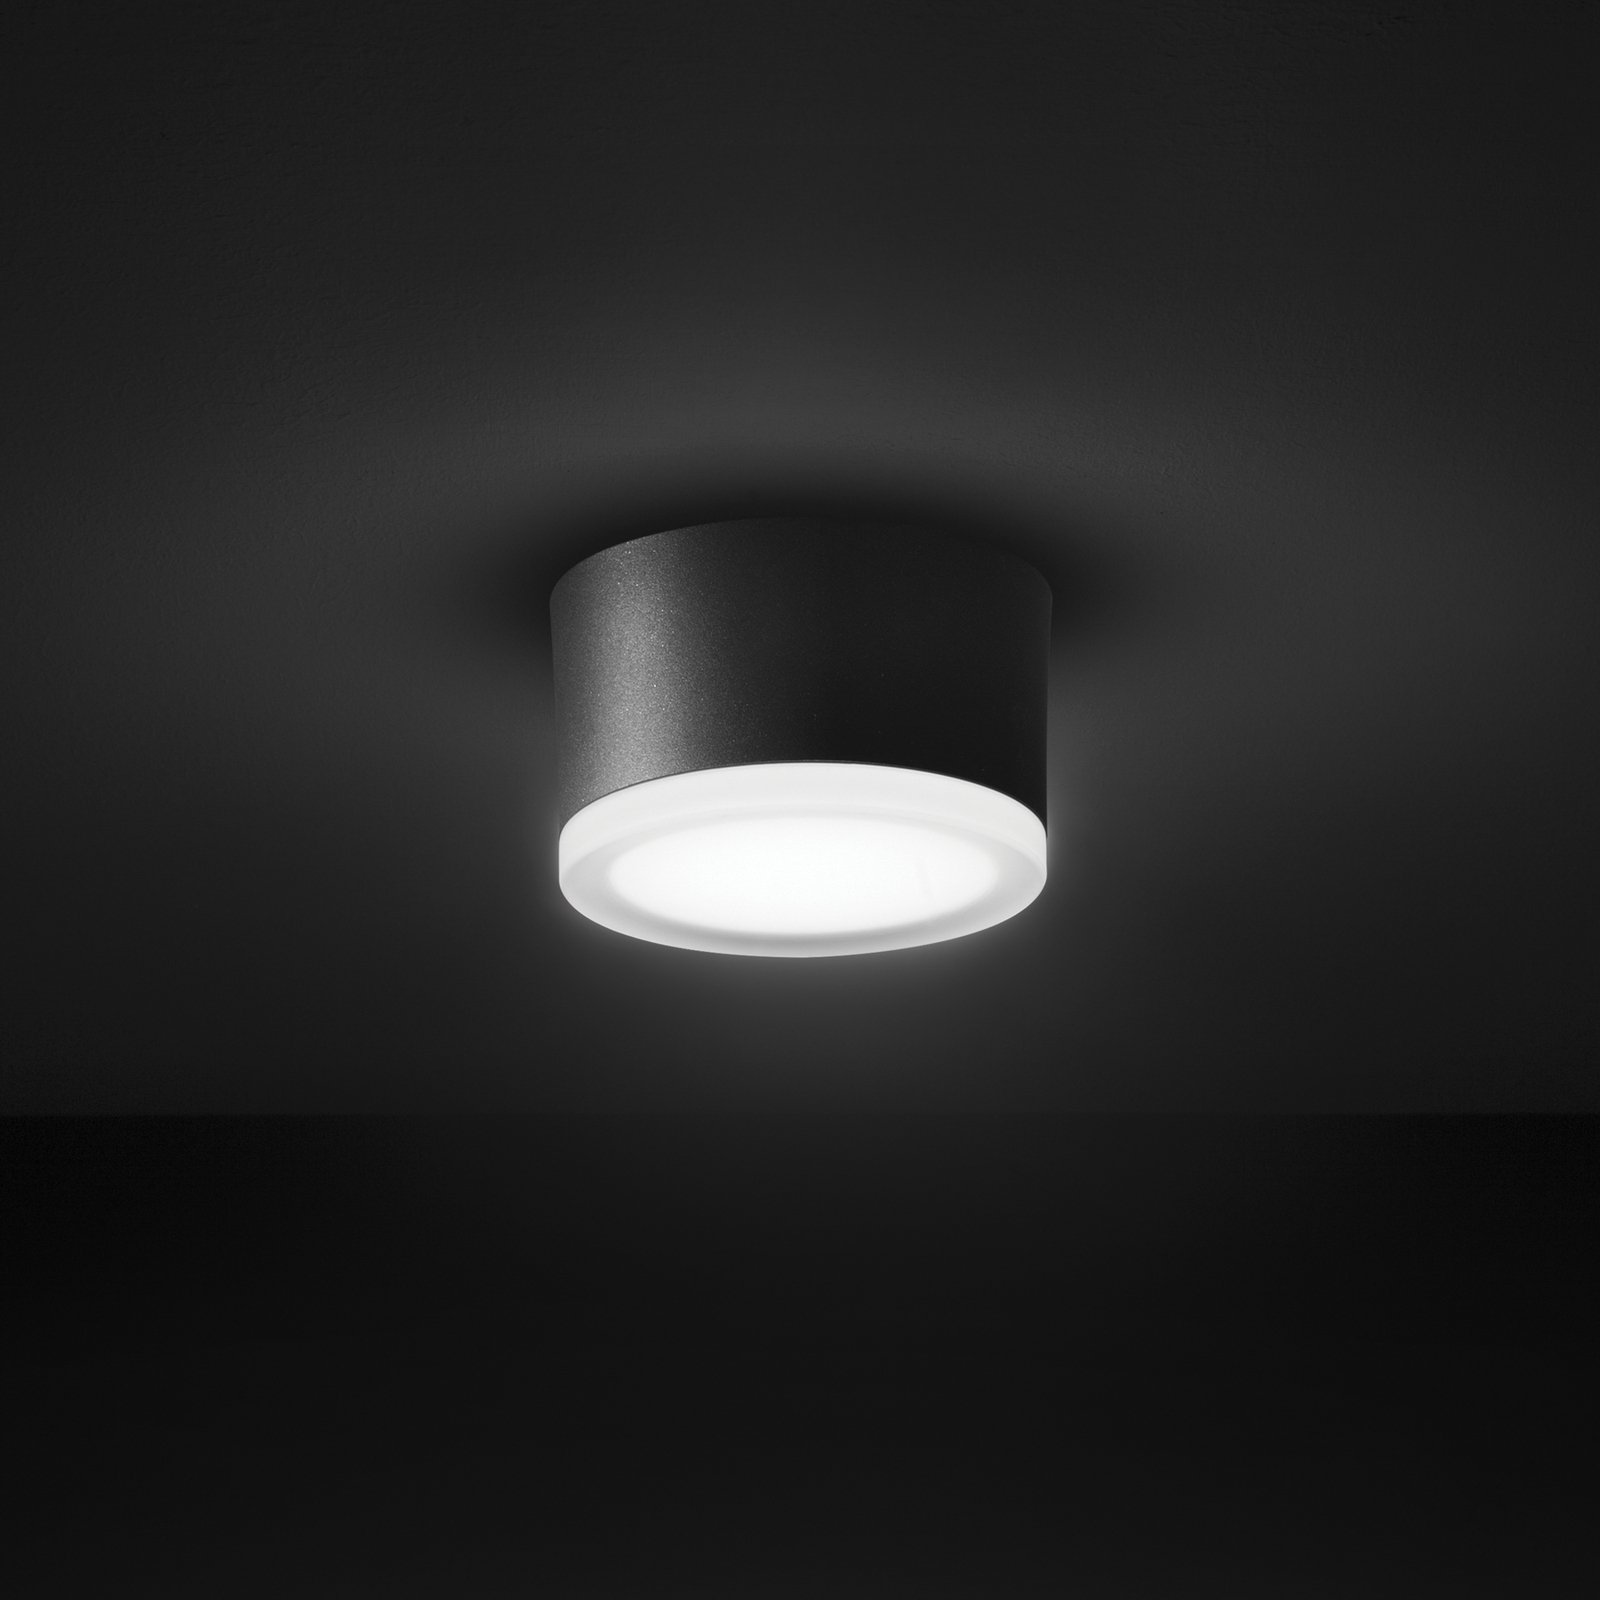 Stropní svítidlo LED 1420 pro venkovní použití, grafit Ø 13 cm